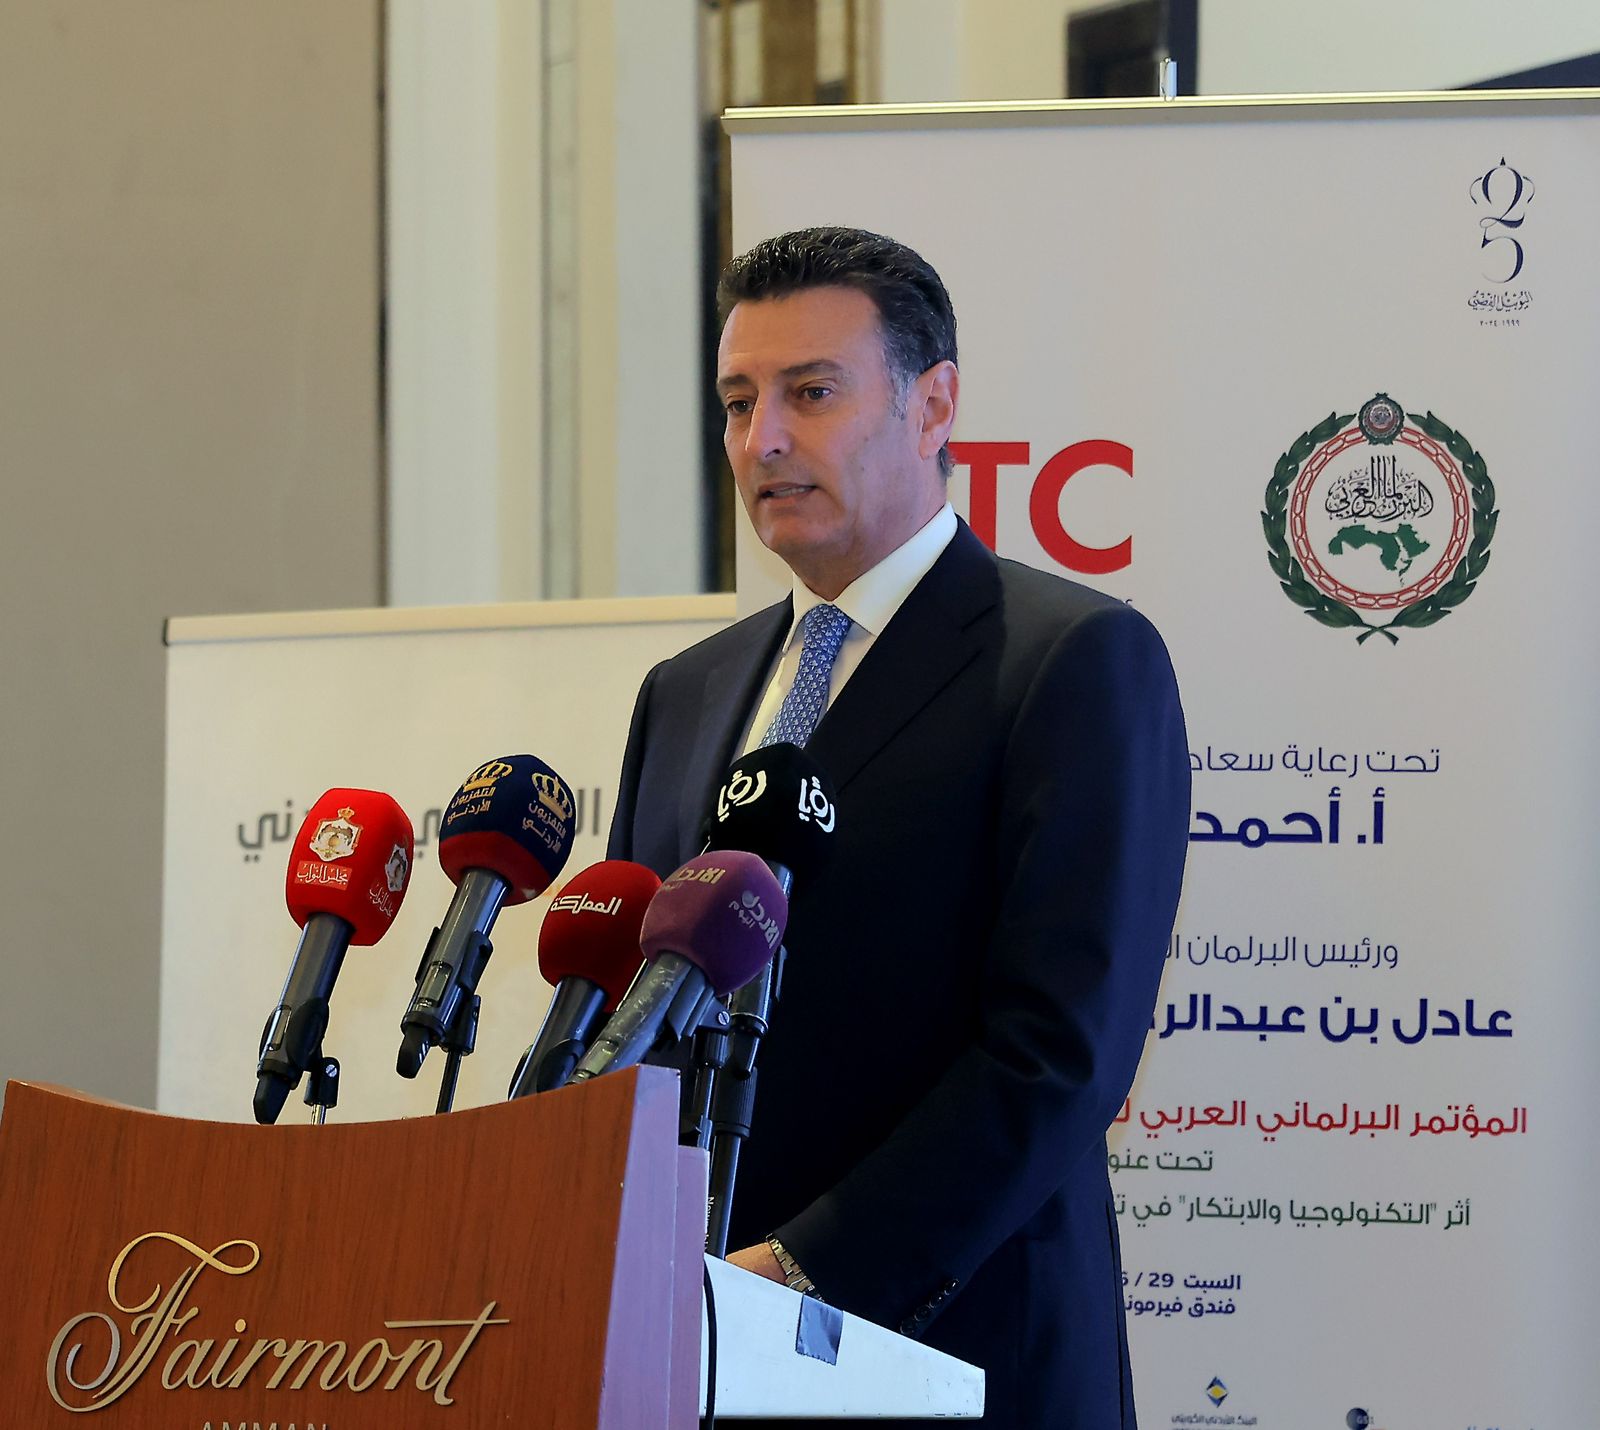 الصفدي يرعى مؤتمر أثر التكنولوجيا والابتكار في تعزيز نمو الاقتصاد العربي